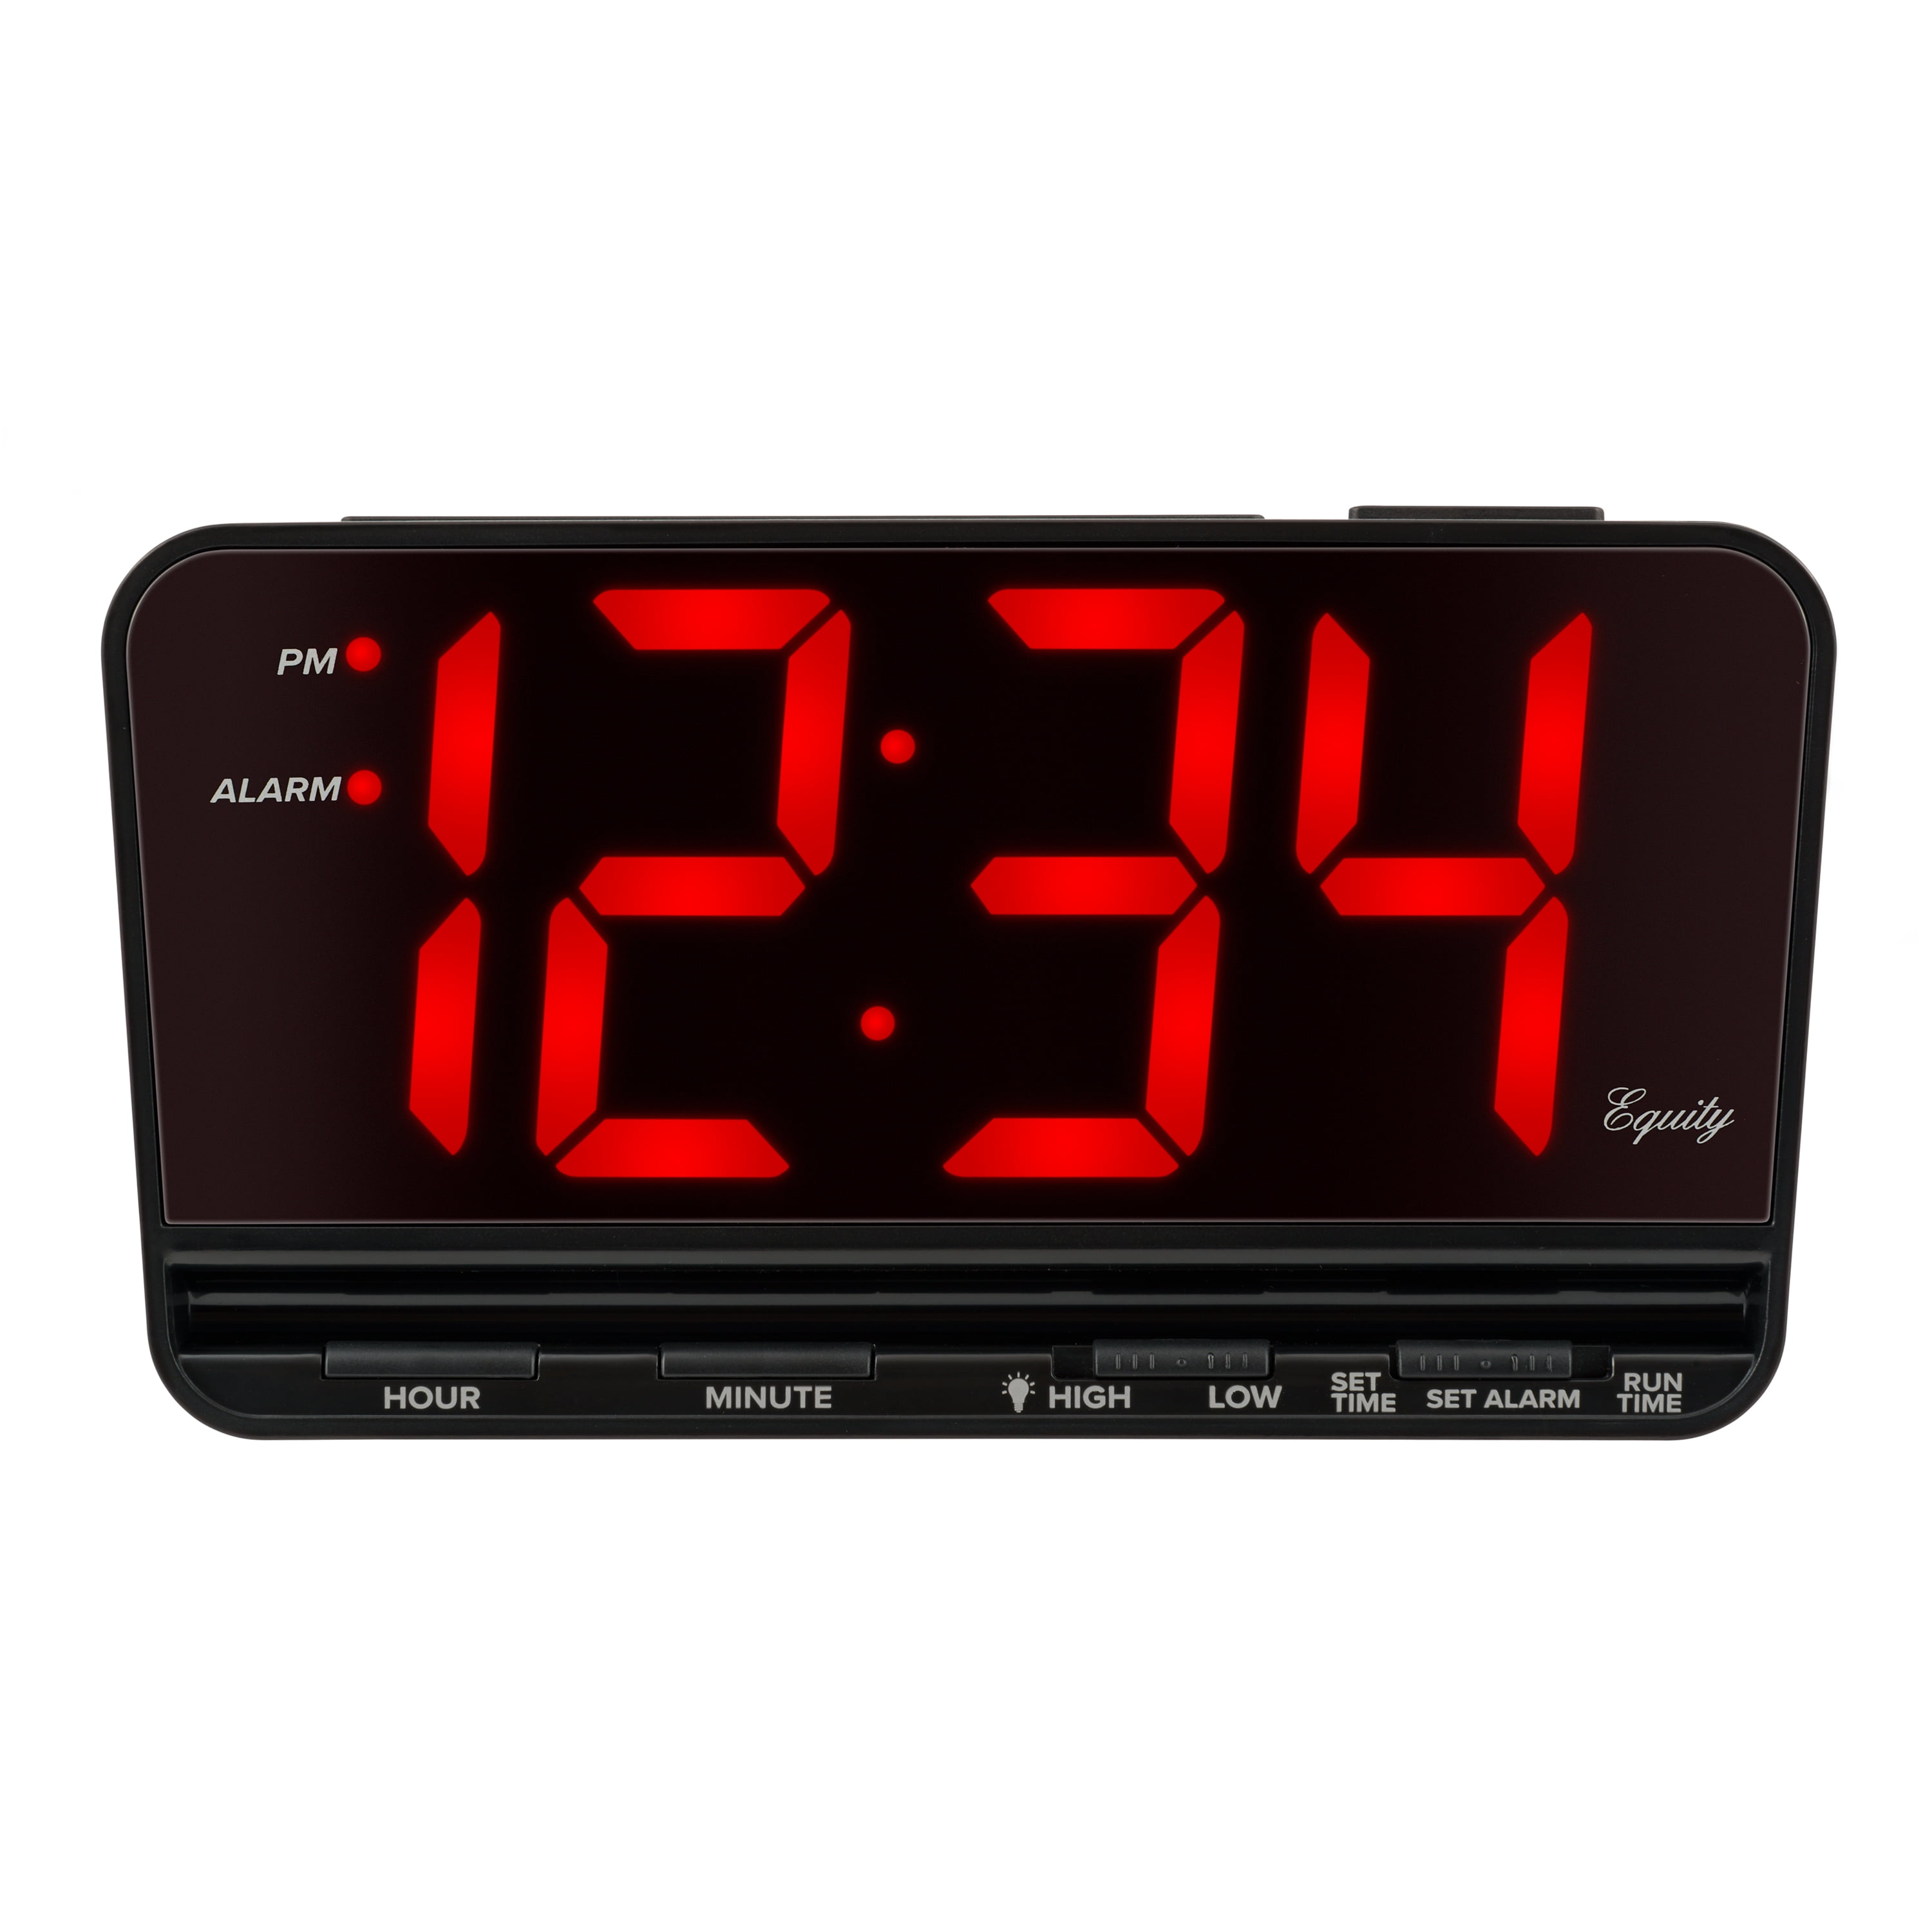 Digital Home Température Large Big Jumbo DEL wall desk clock/calendar 12/24H 